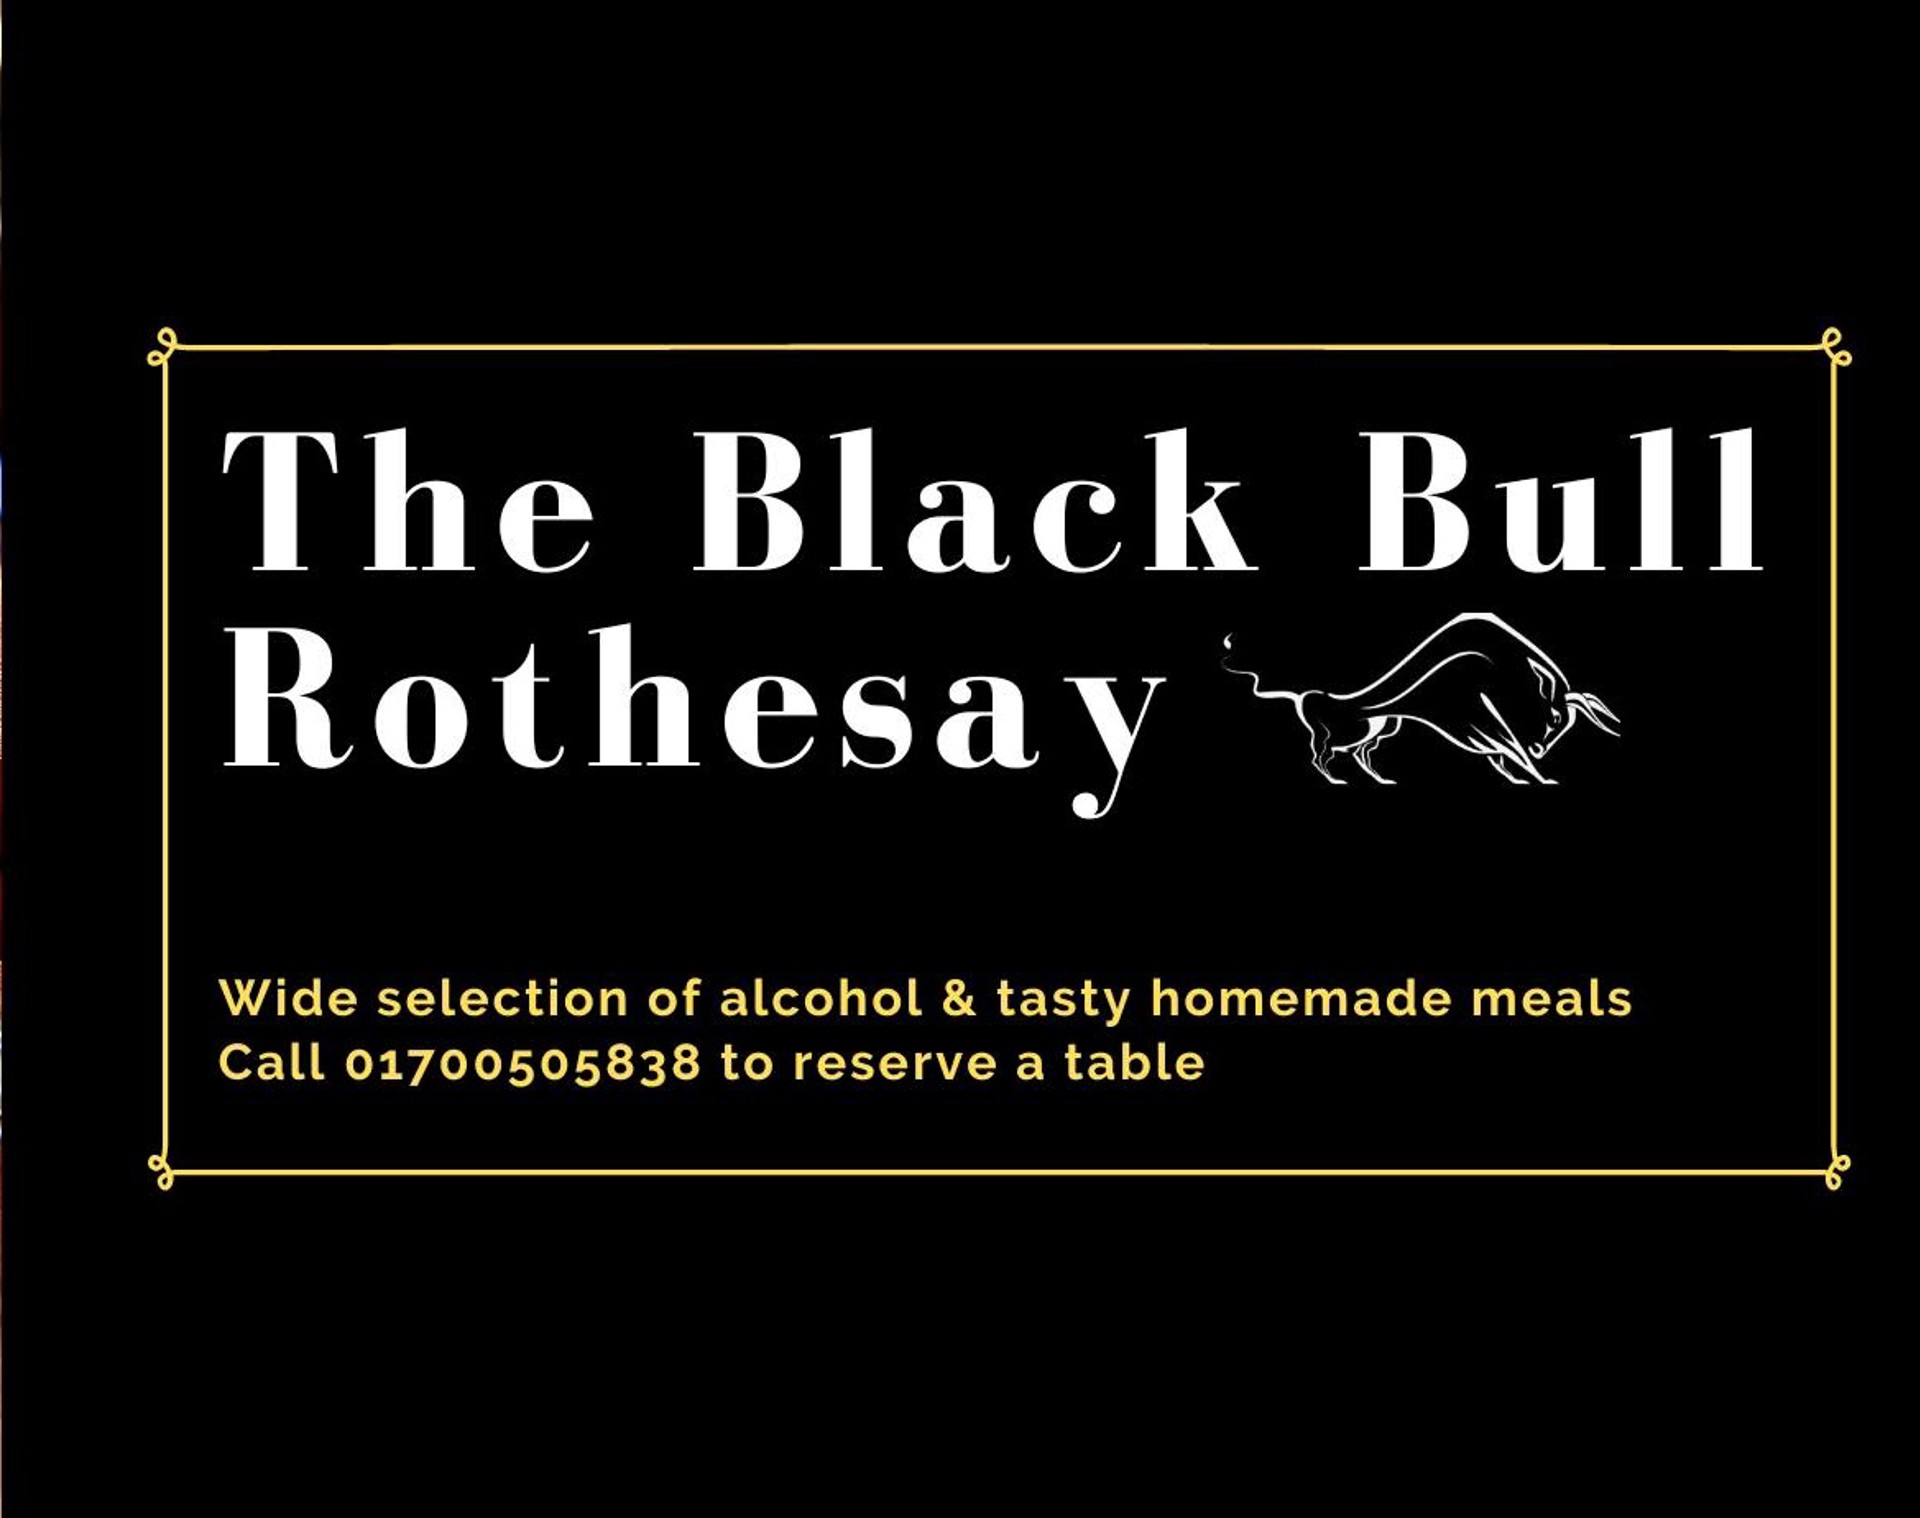 Background image - Black Bull Rothesay (1)